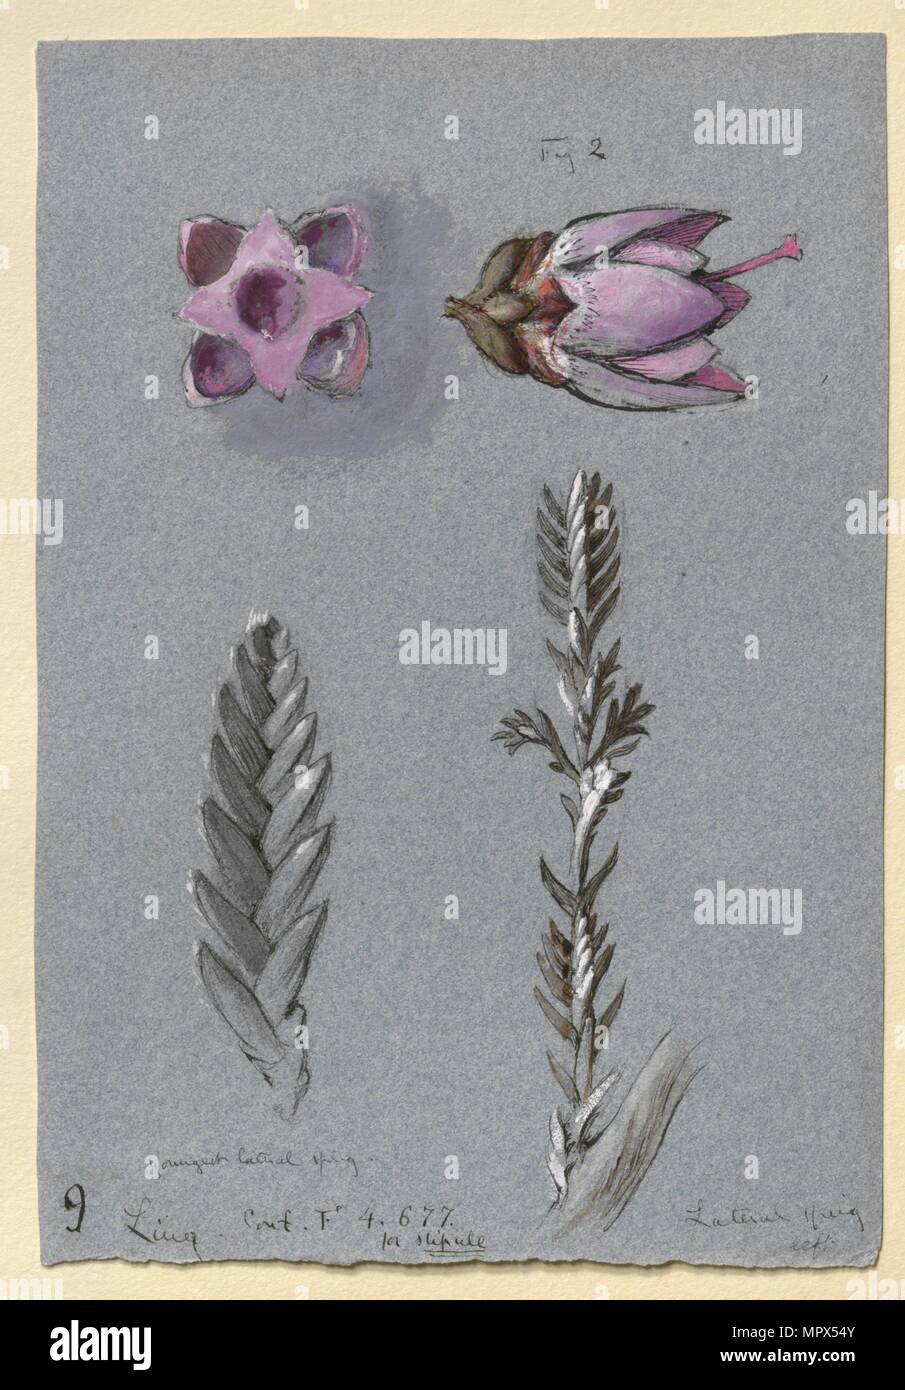 Four Studies of Ling, probably 14 September 1869. Artist: John Ruskin. Stock Photo